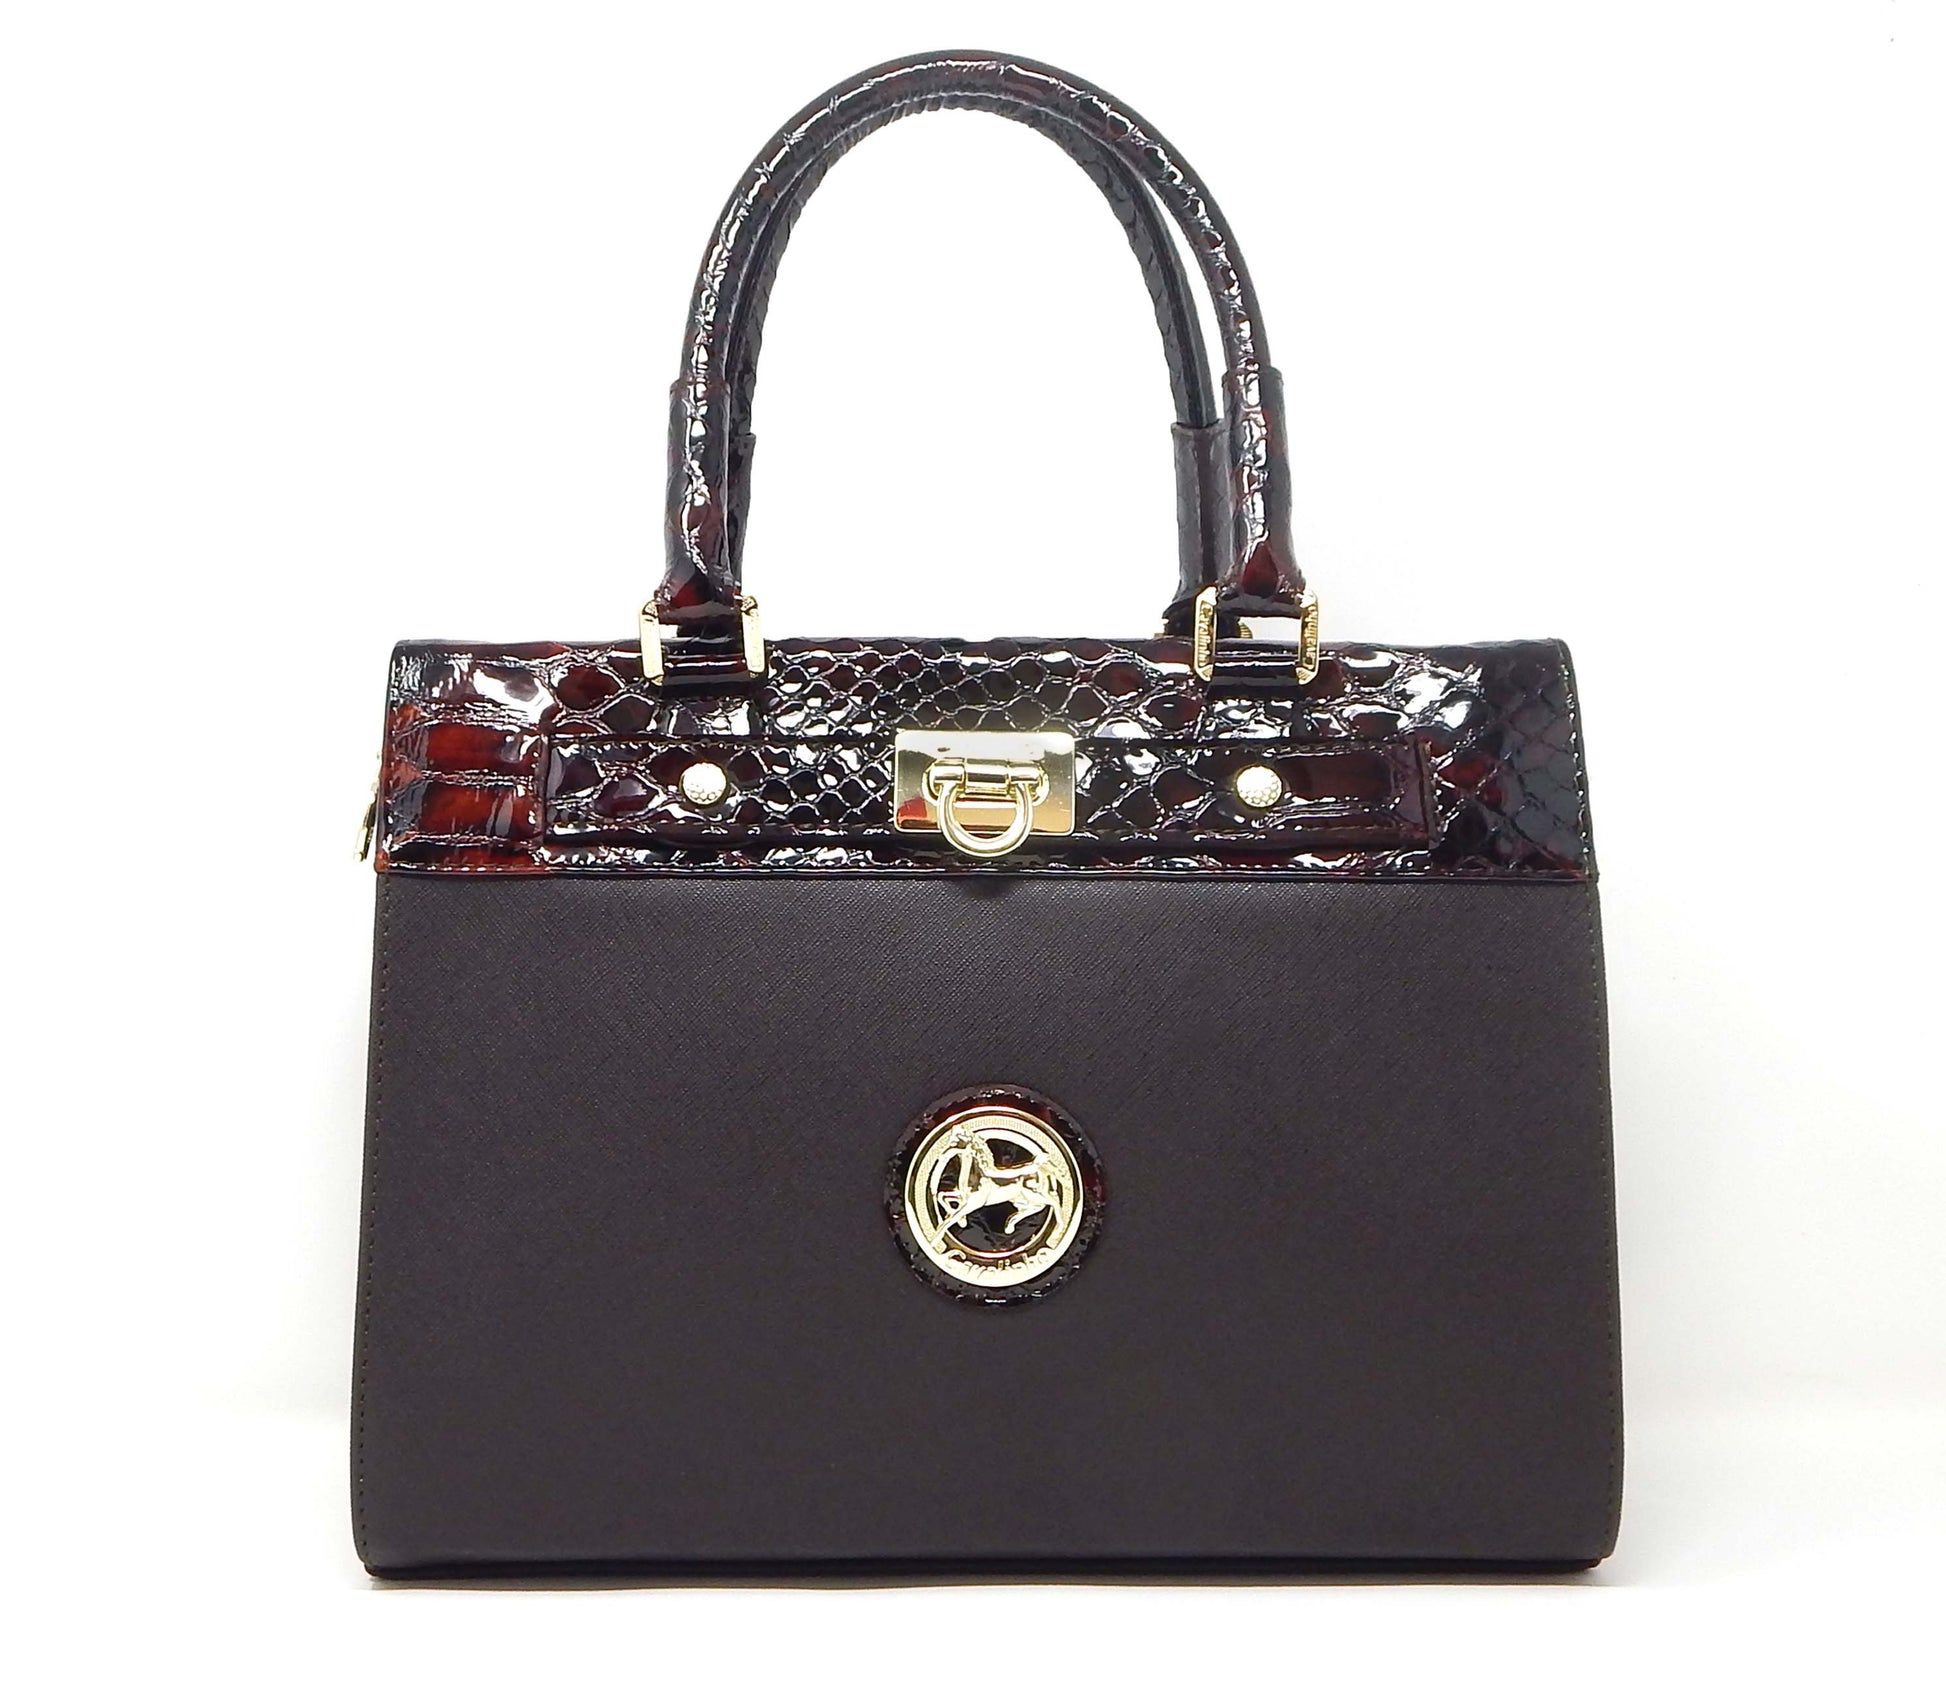 #color_ Brown | Cavalinho Cherry Blossom Handbag - Brown - 18810505.02.99_1